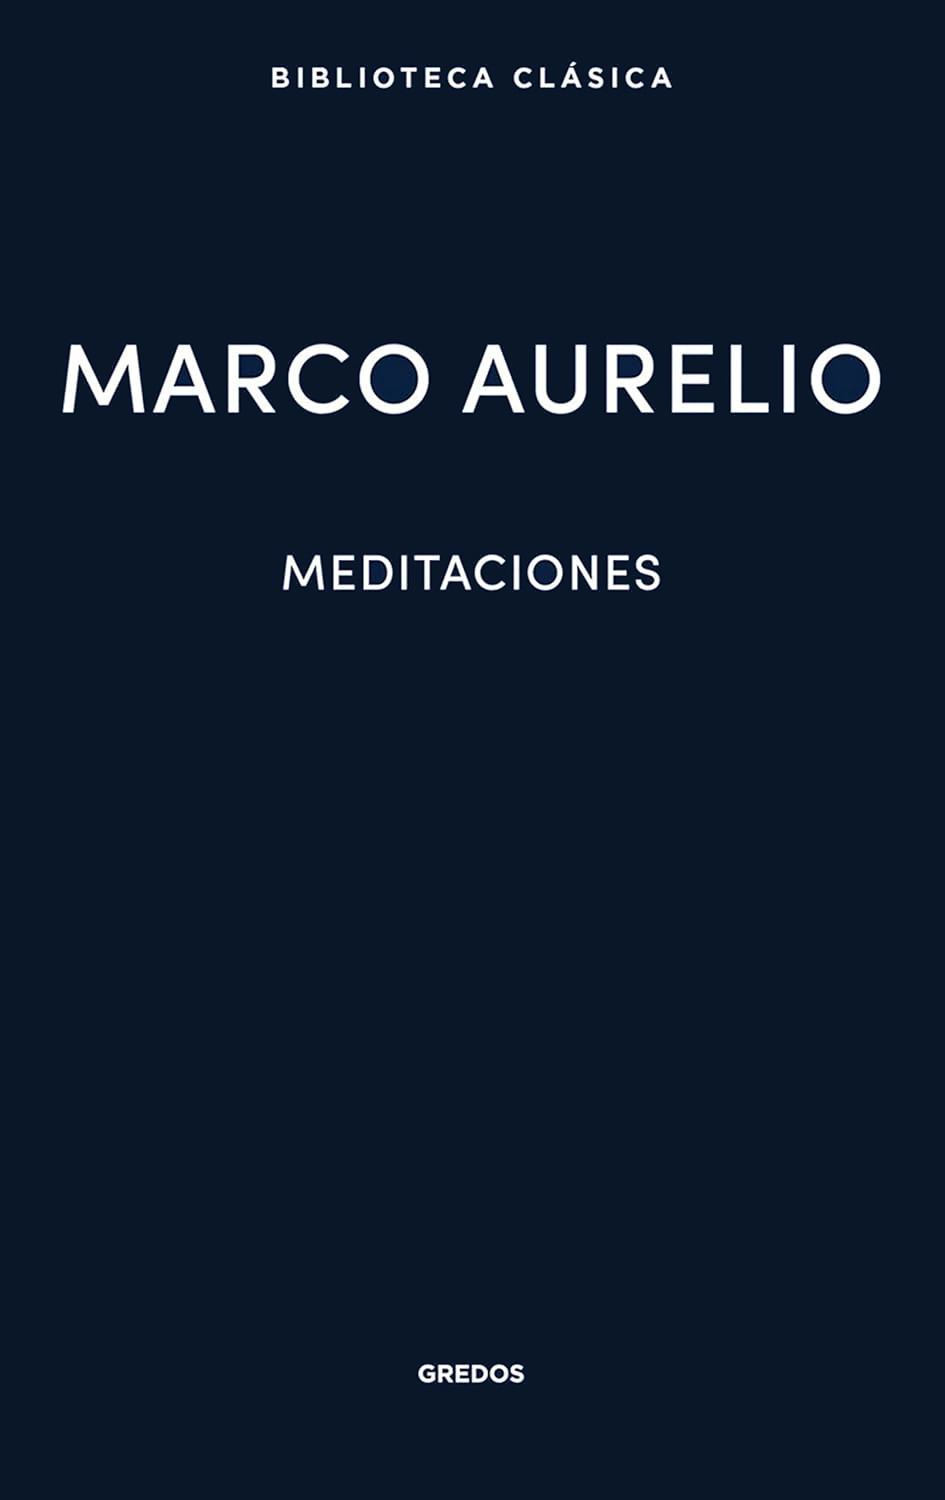 meditaciones marco aurelio pdf